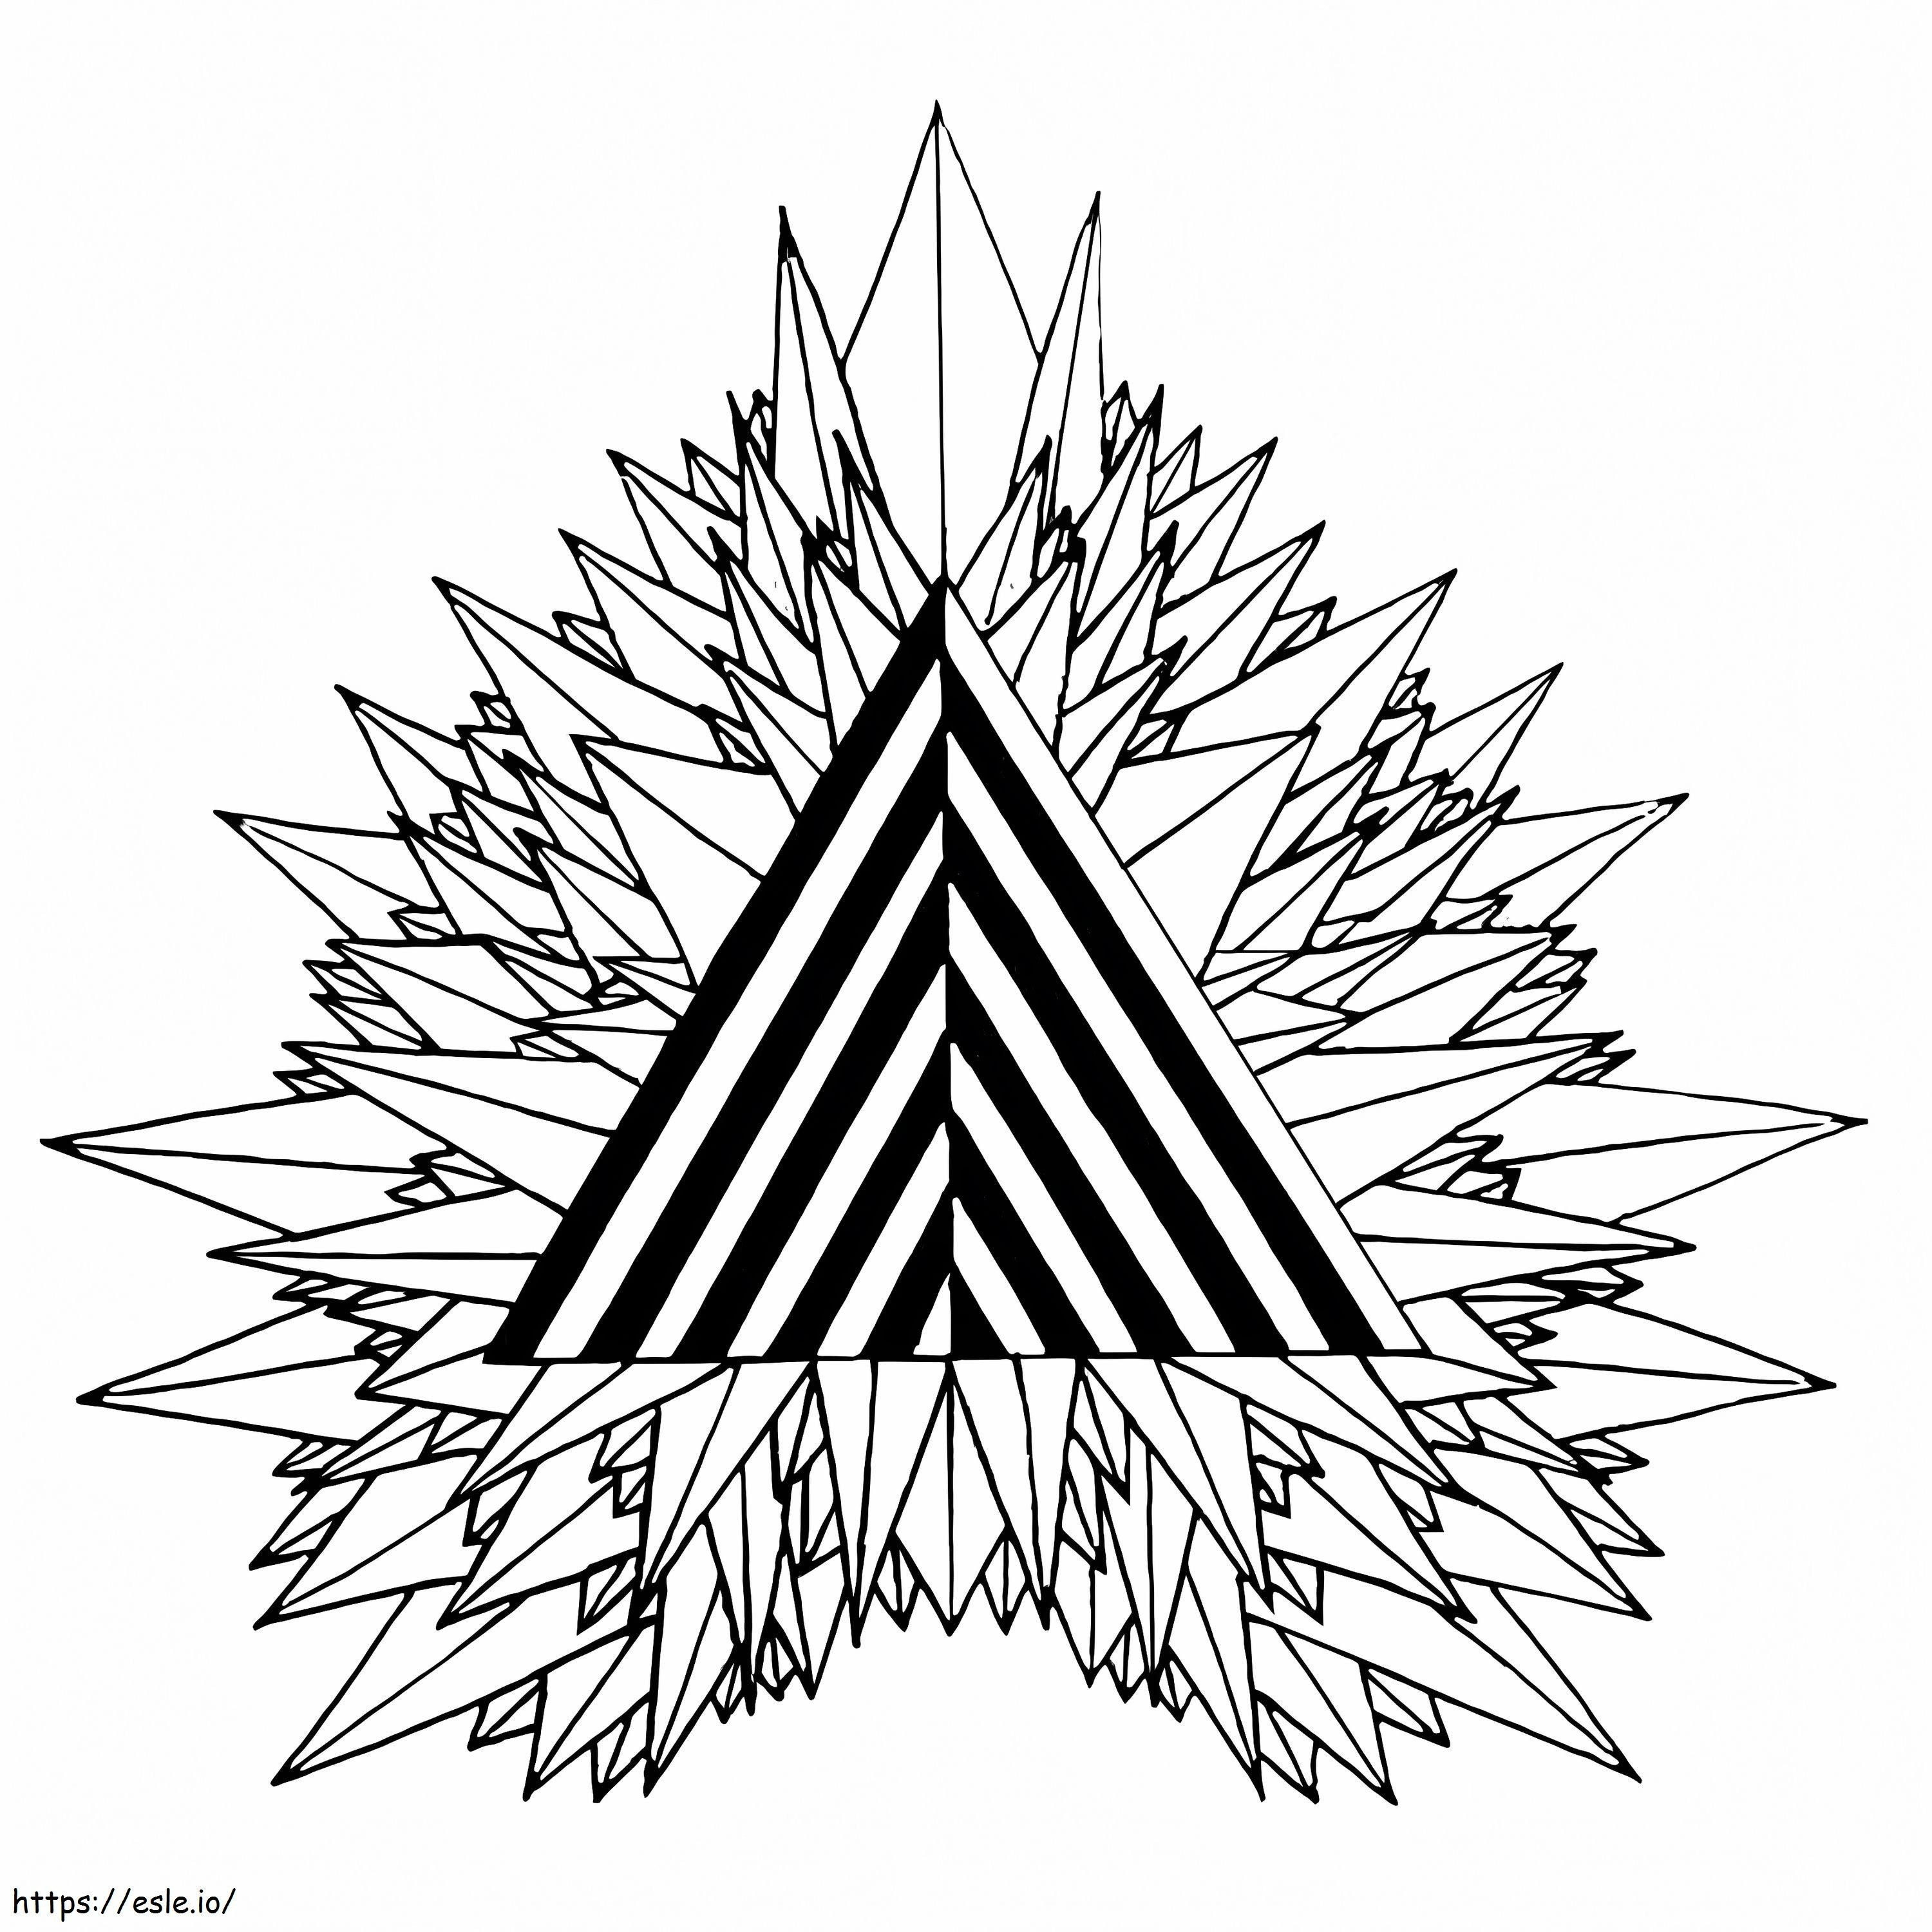 Misztikus háromszög pszichedelikus kifestő